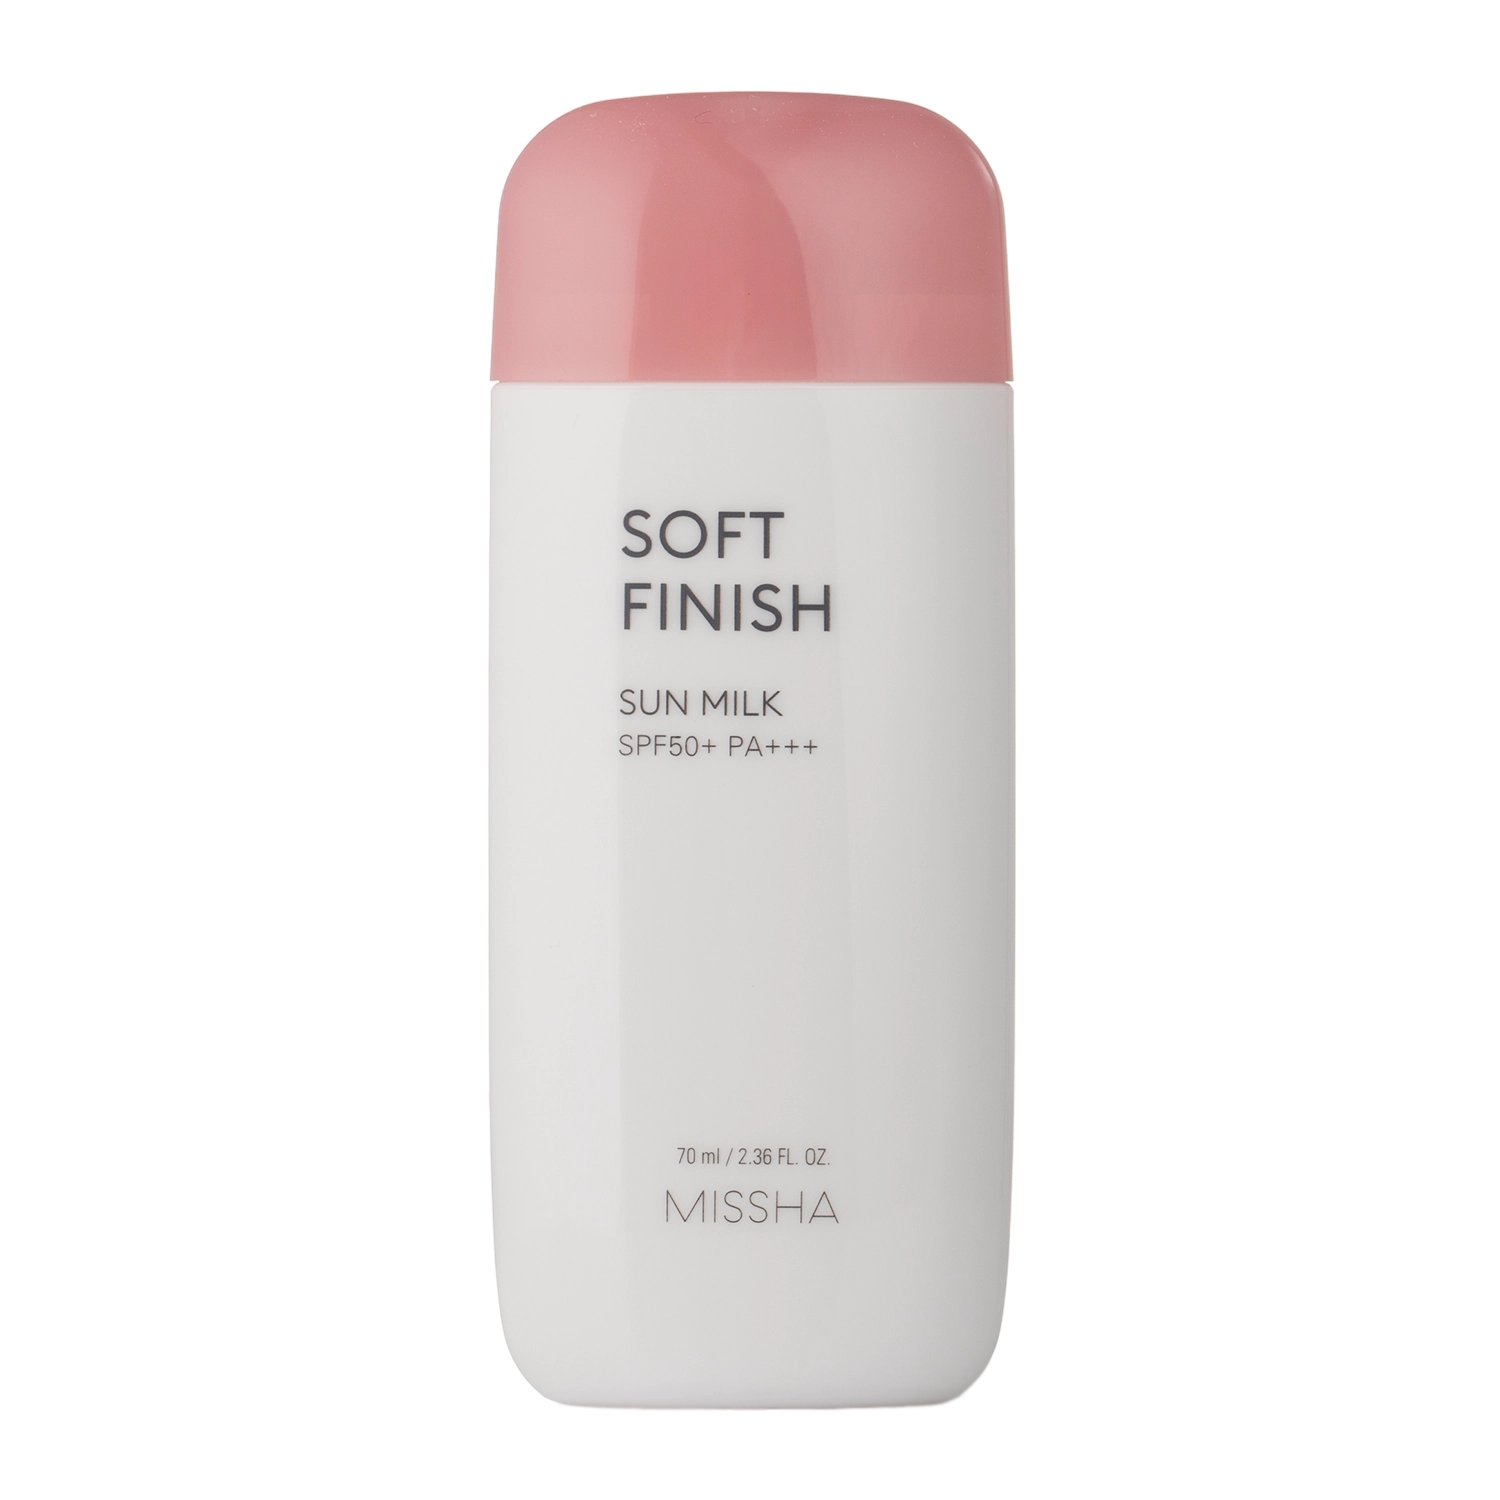 Missha - All-Around Safe Block Soft Finish Sun Milk SPF50+ PA+++ - Soft Finish krém s ochranným filtrem - 70 ml